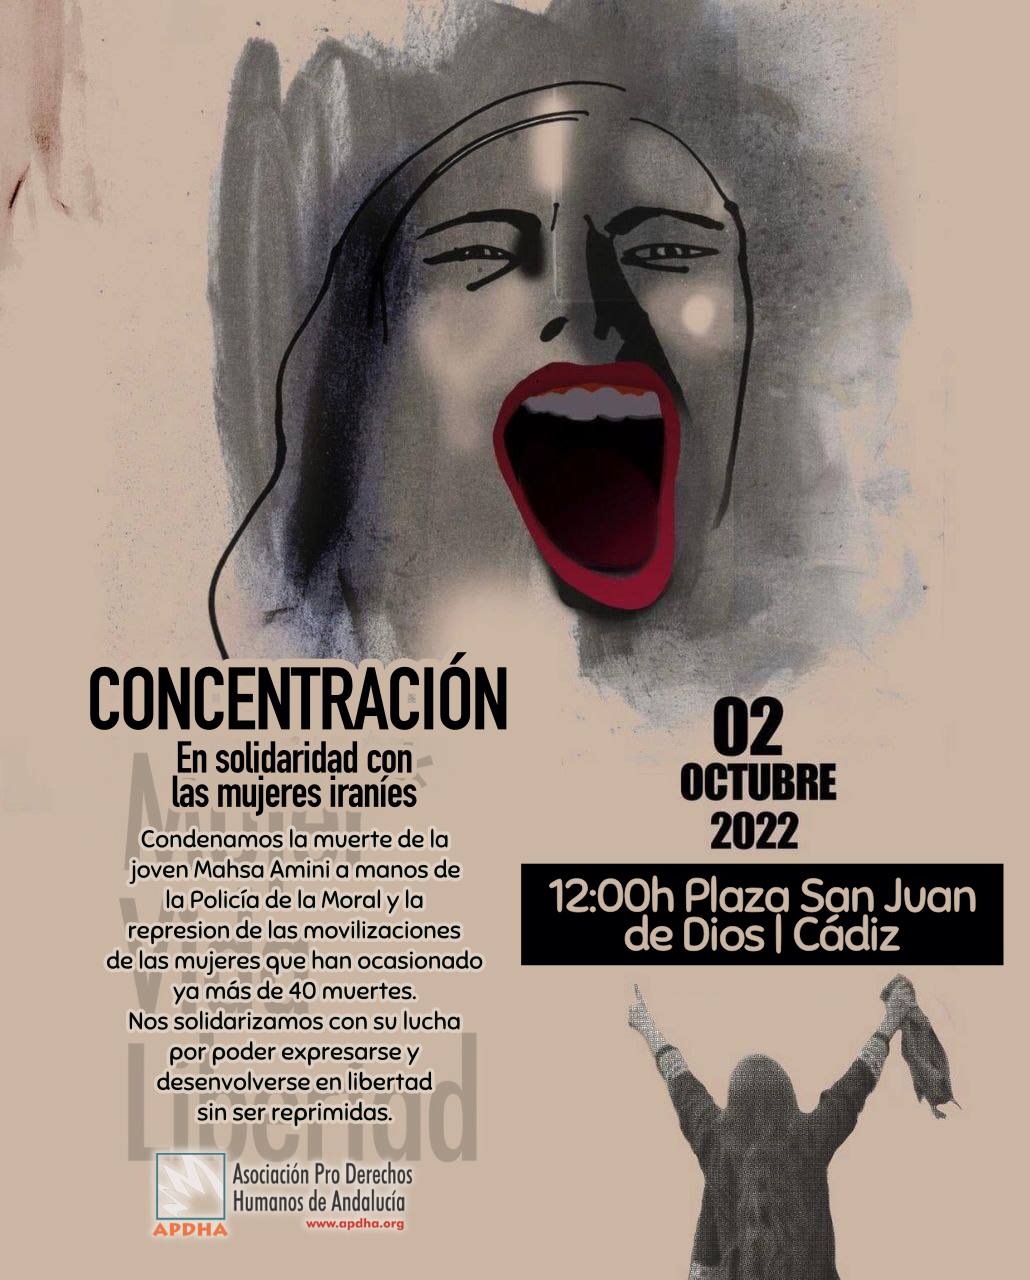 Cádiz| Concentración en solidaridad con las mujeres iraníes